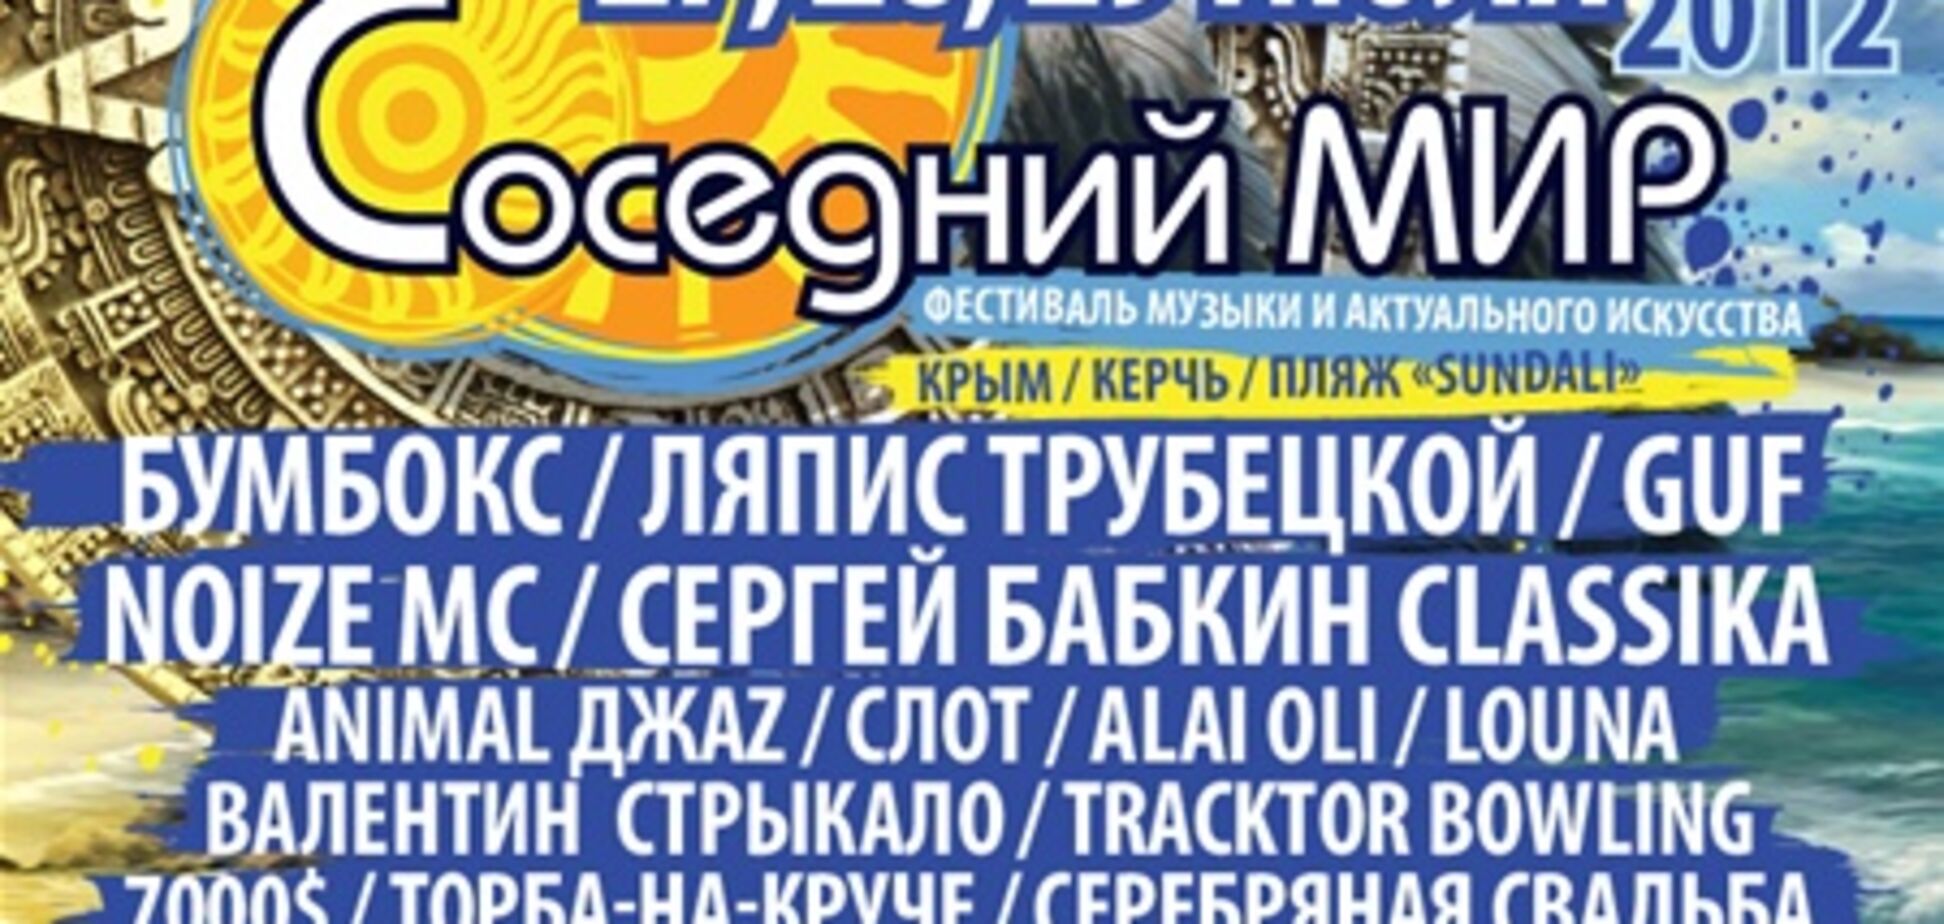 27- 29 июля музыкальный фестиваль СОСЕДНИЙ МИР-2012